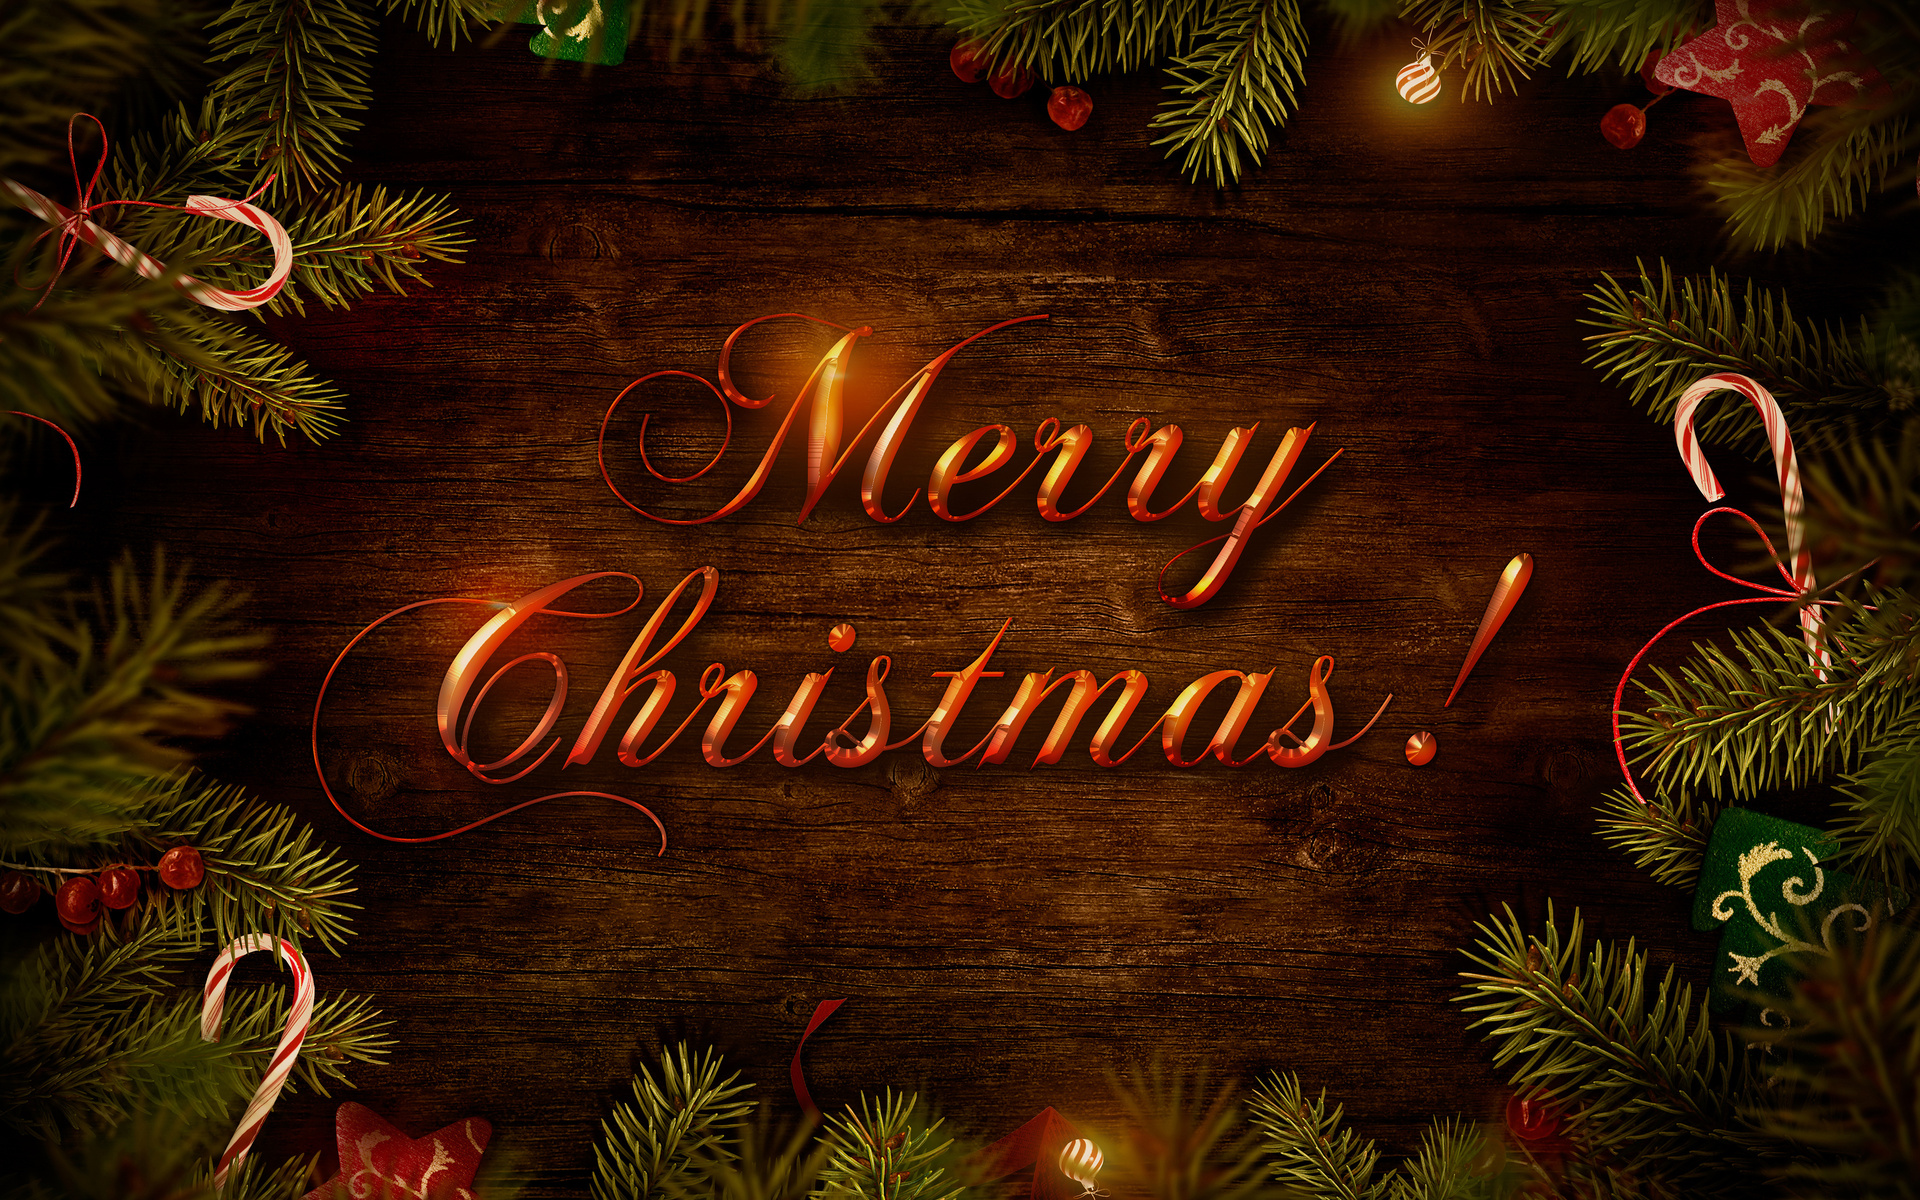 Ёлочные ветки, красно-белые новогодние леденцы и надпись Merry Christmas! / Веселого Рождества